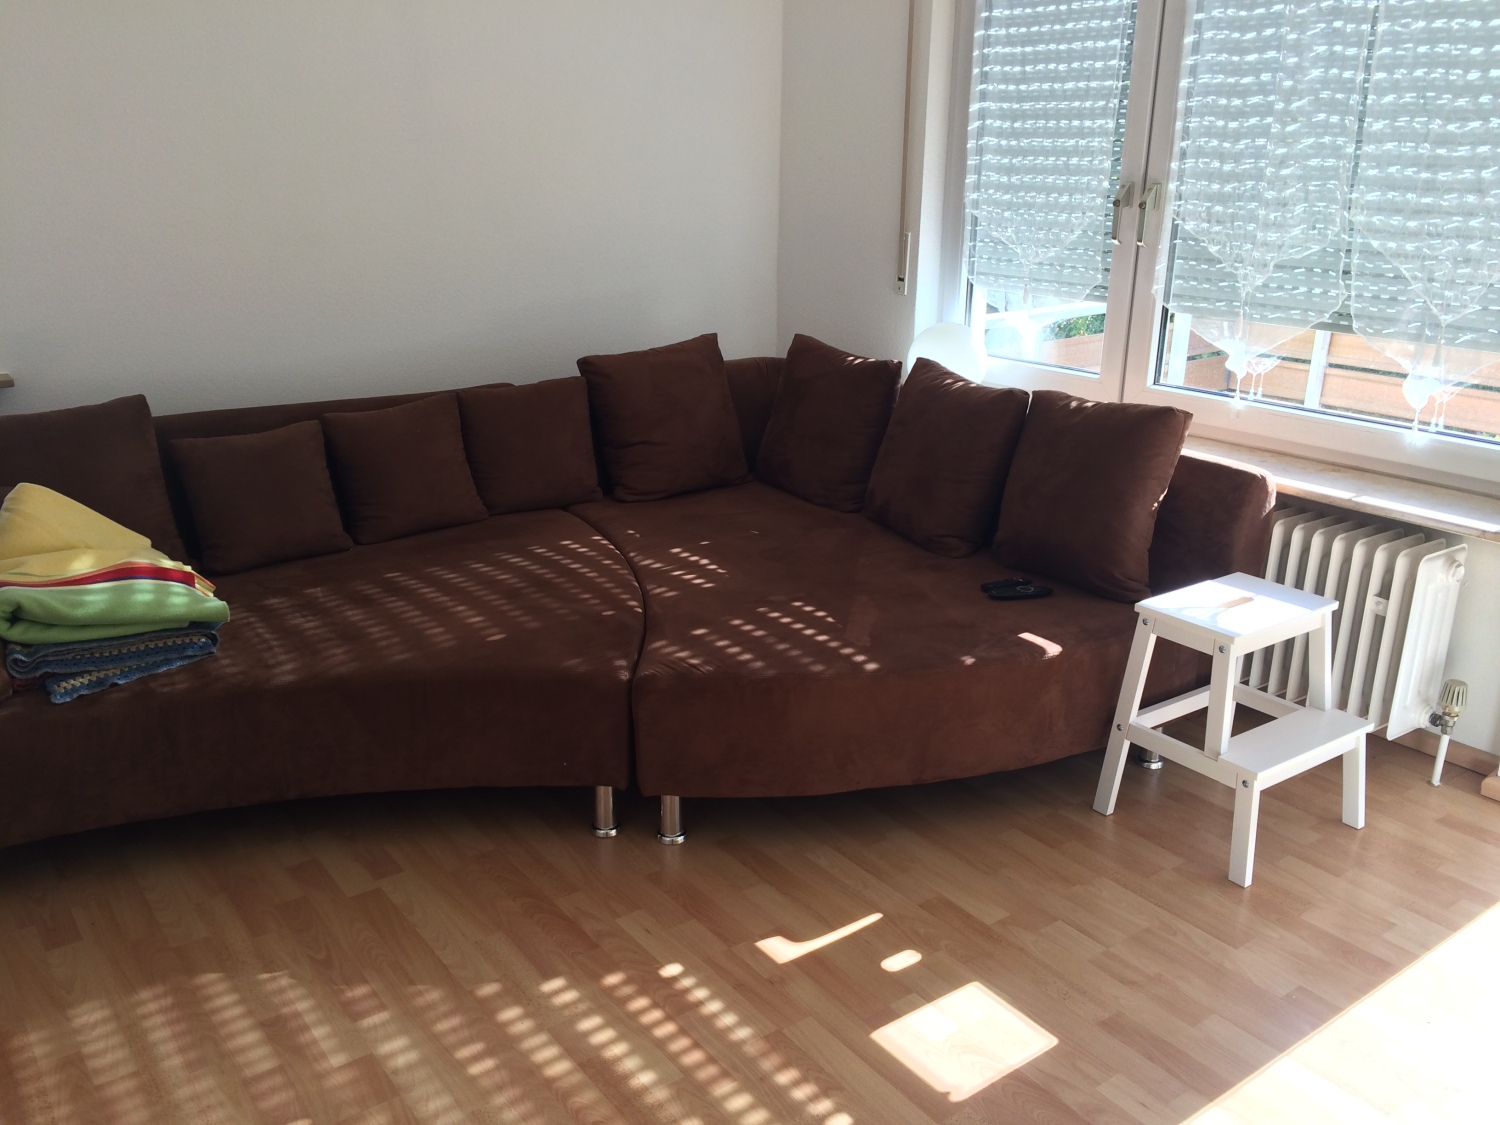 2,5 Zimmer Wohnung, Möbliert zur Untervermietung mit Balkon in Stuttgart Heumaden